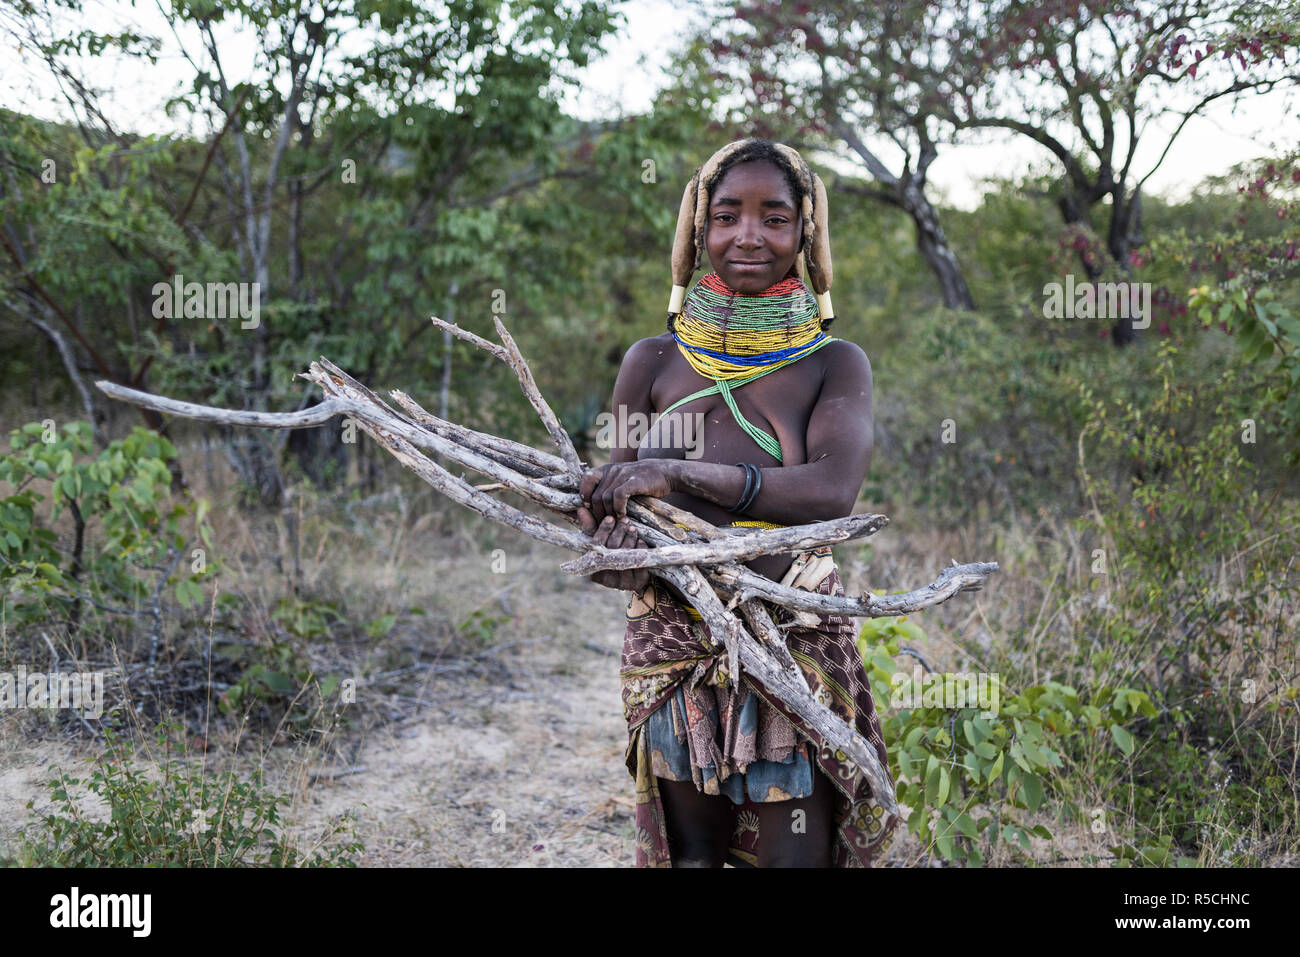 Muila Frau mit traditionellen Ornamenten und Frisur Brennholz sammeln für das Kochen. Stockfoto